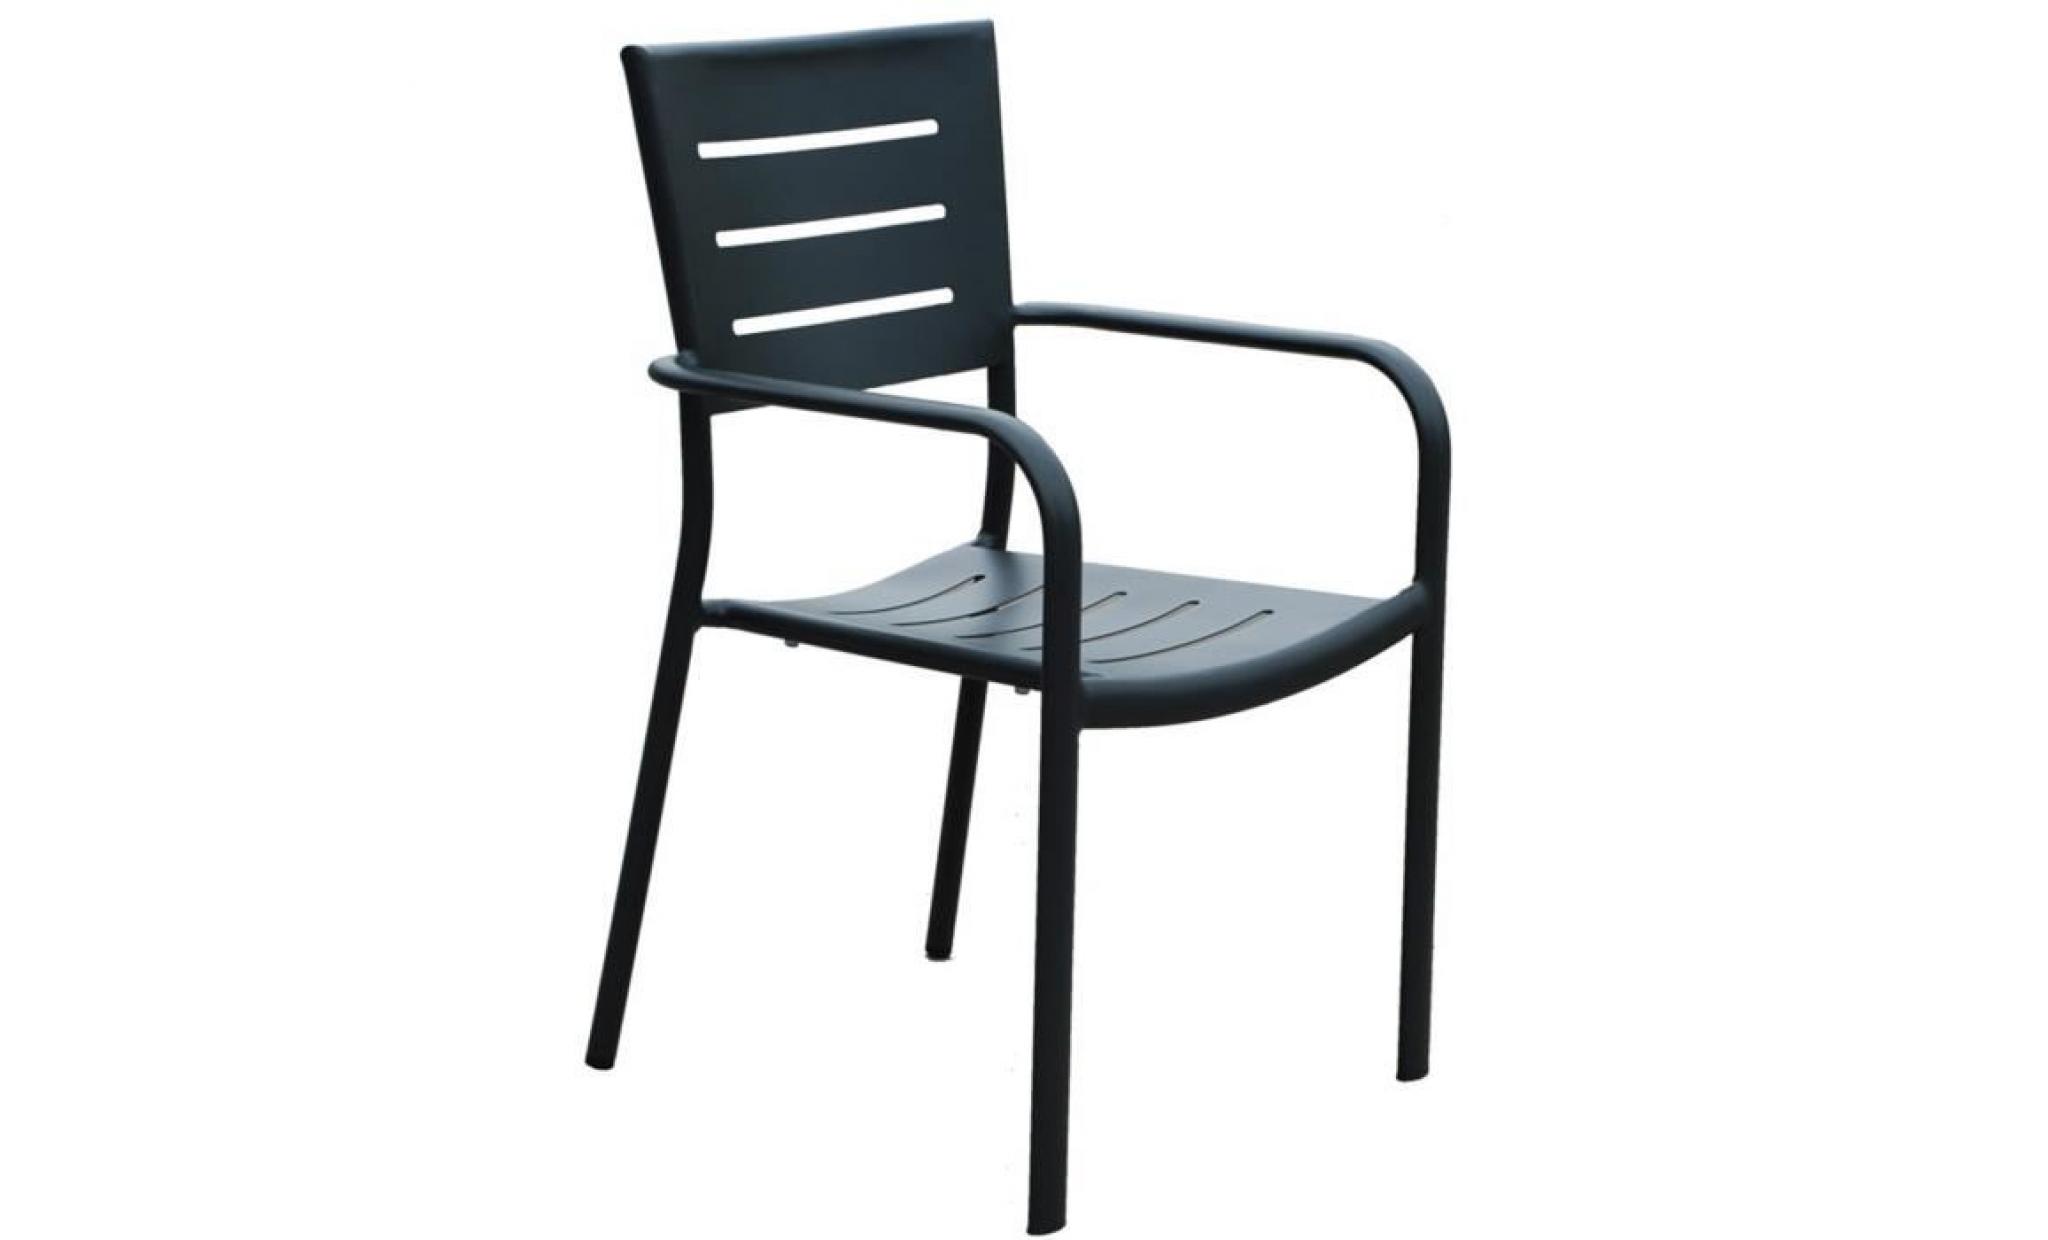 fauteuil de jardin empilable en aluminium coloris gris anthracite   dim : h.87 x l.56 x p.57 cm